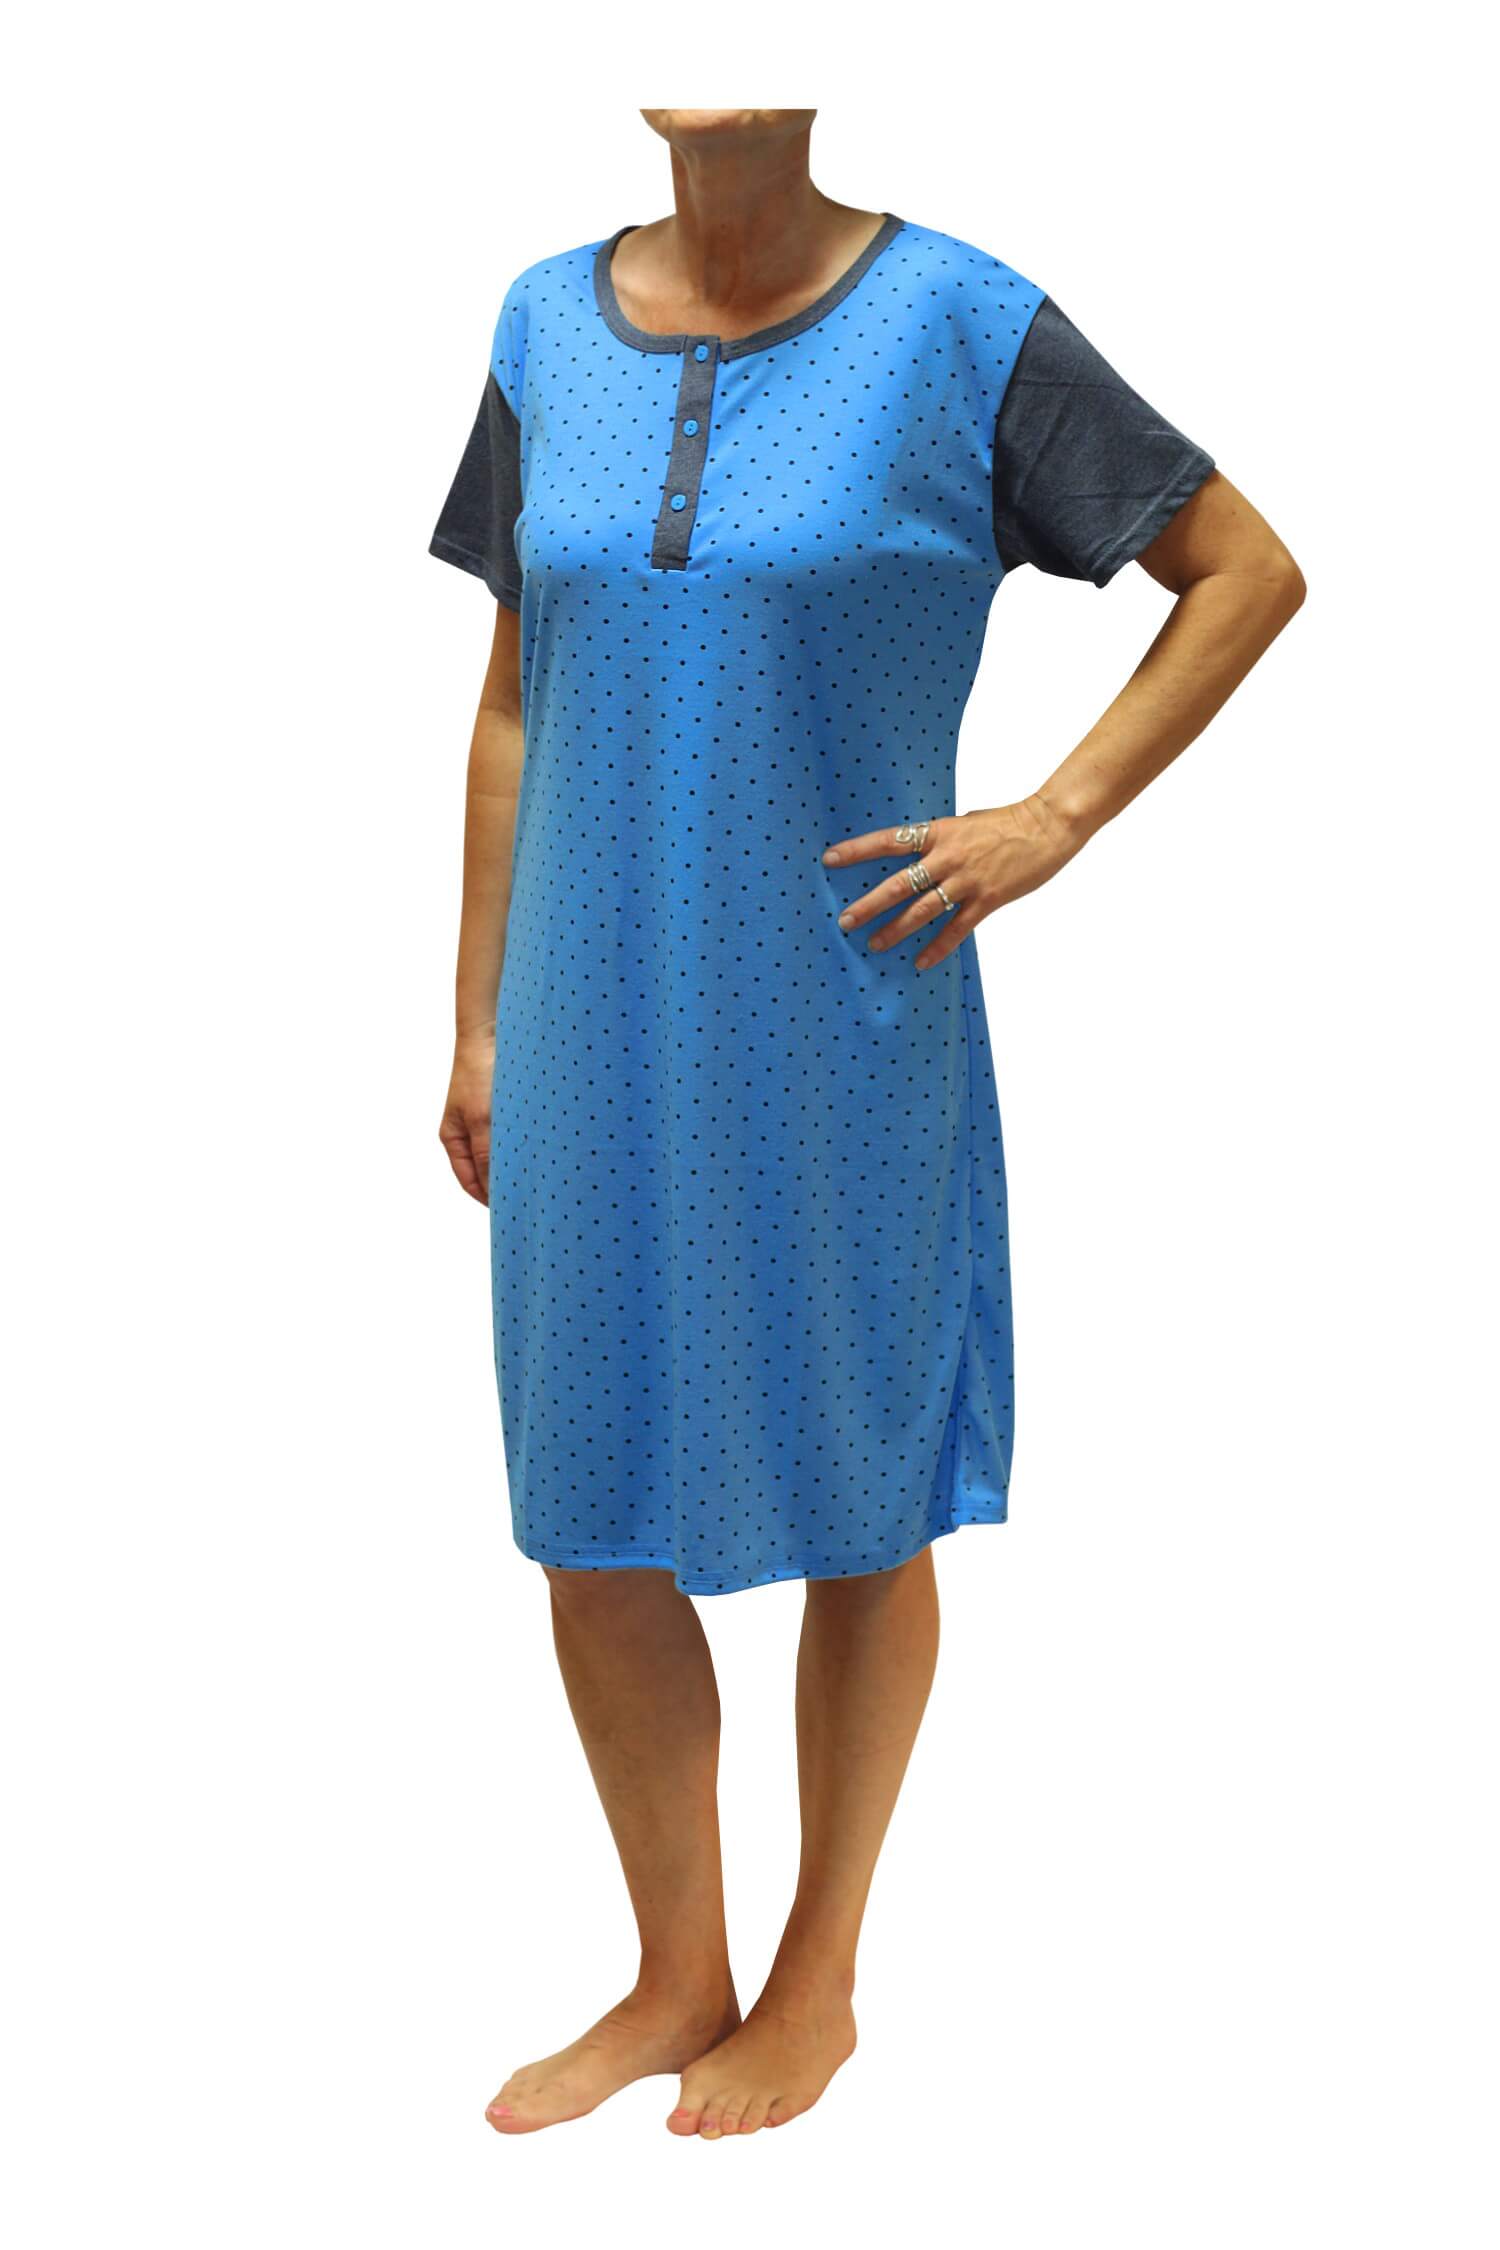 Adéla dámská noční košile s puntíky DNU329-NT 3XL modrá